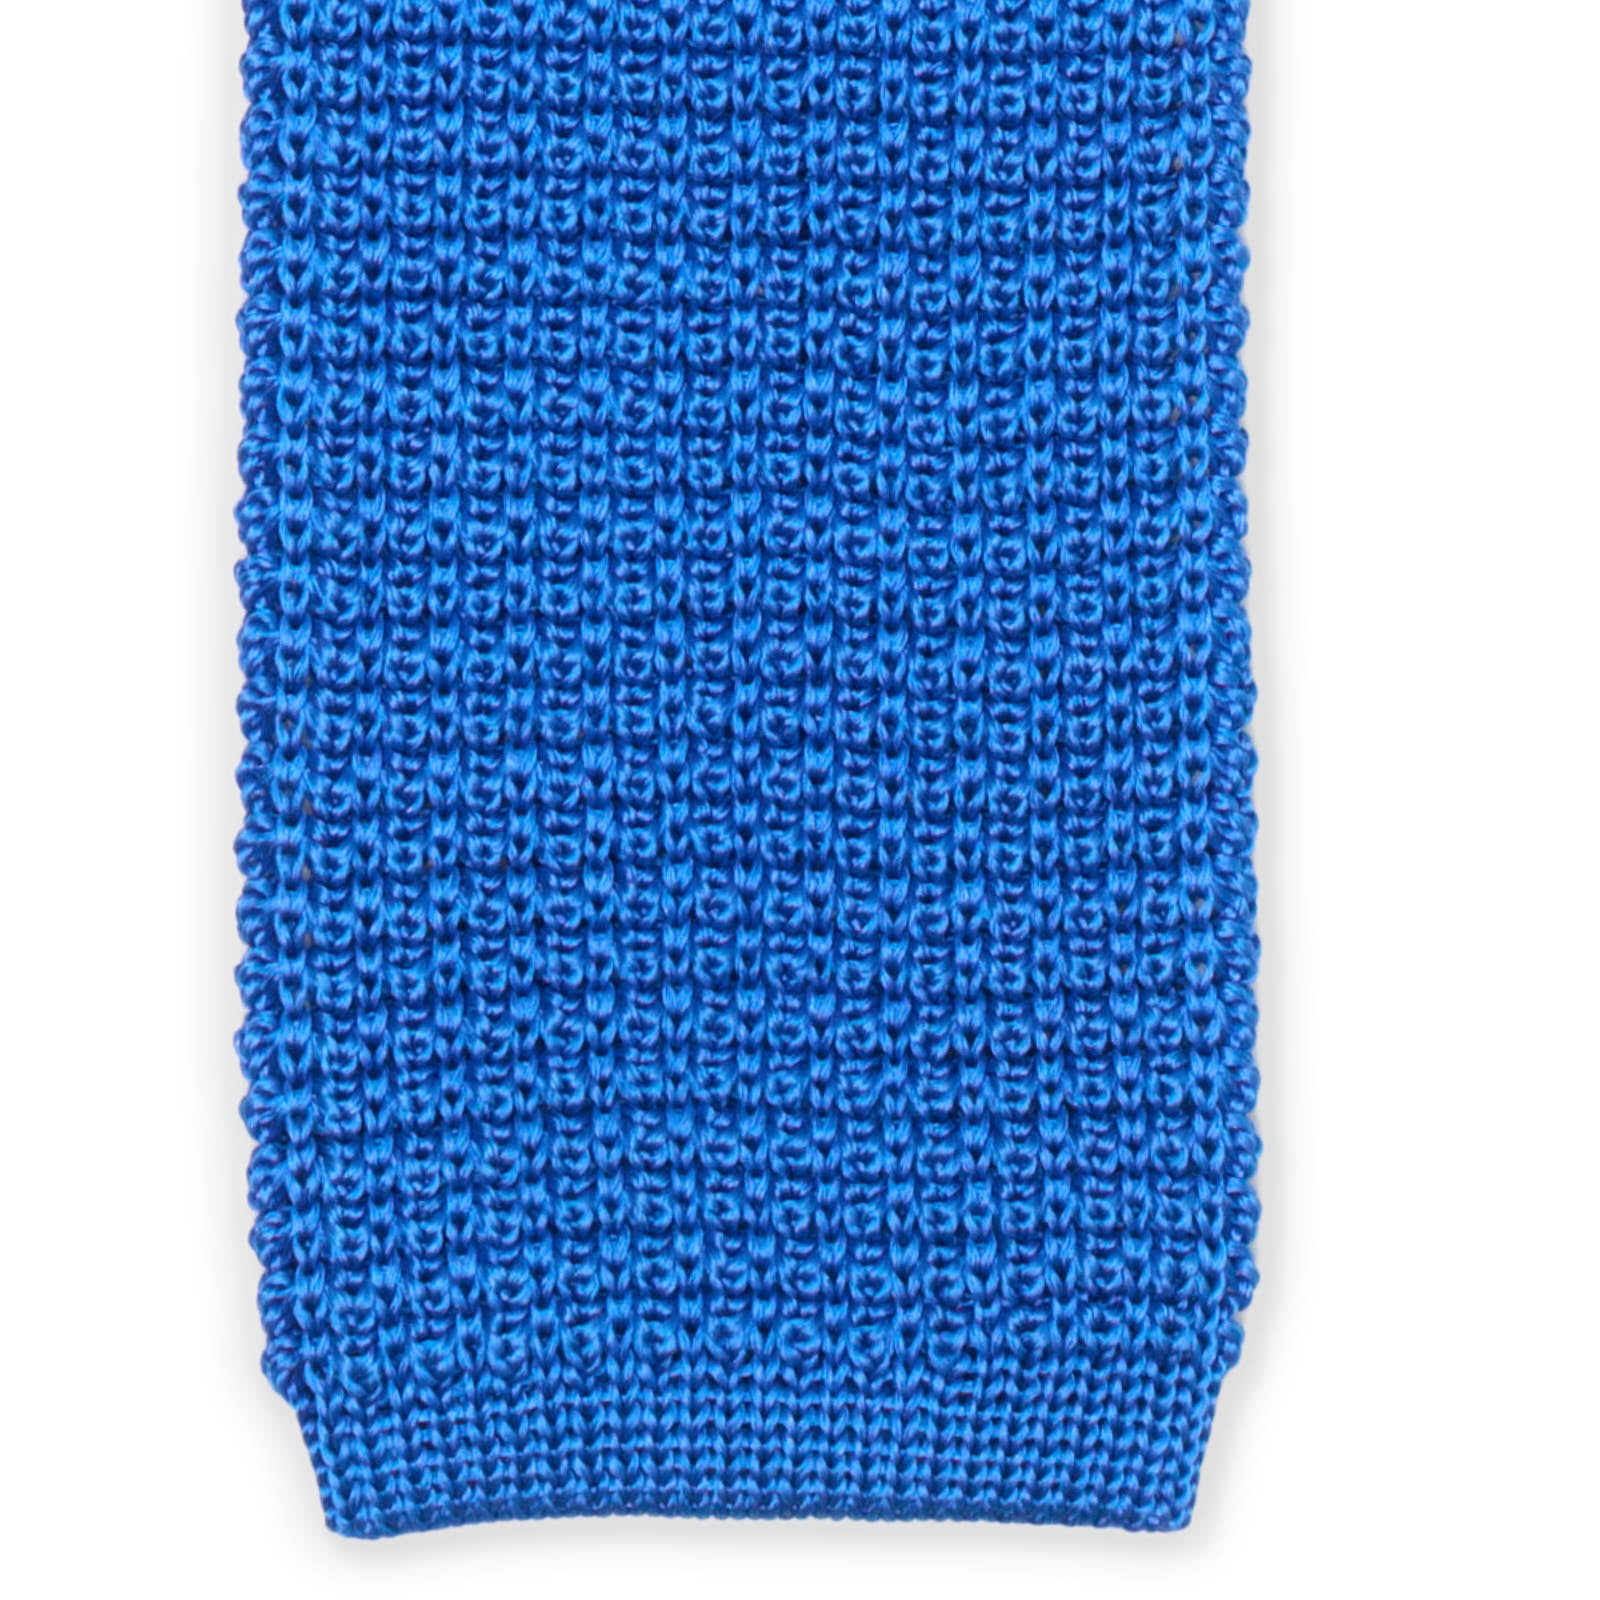 MATTABISCH FOR VANNUCCI Blue Silk Knit Tie NEW